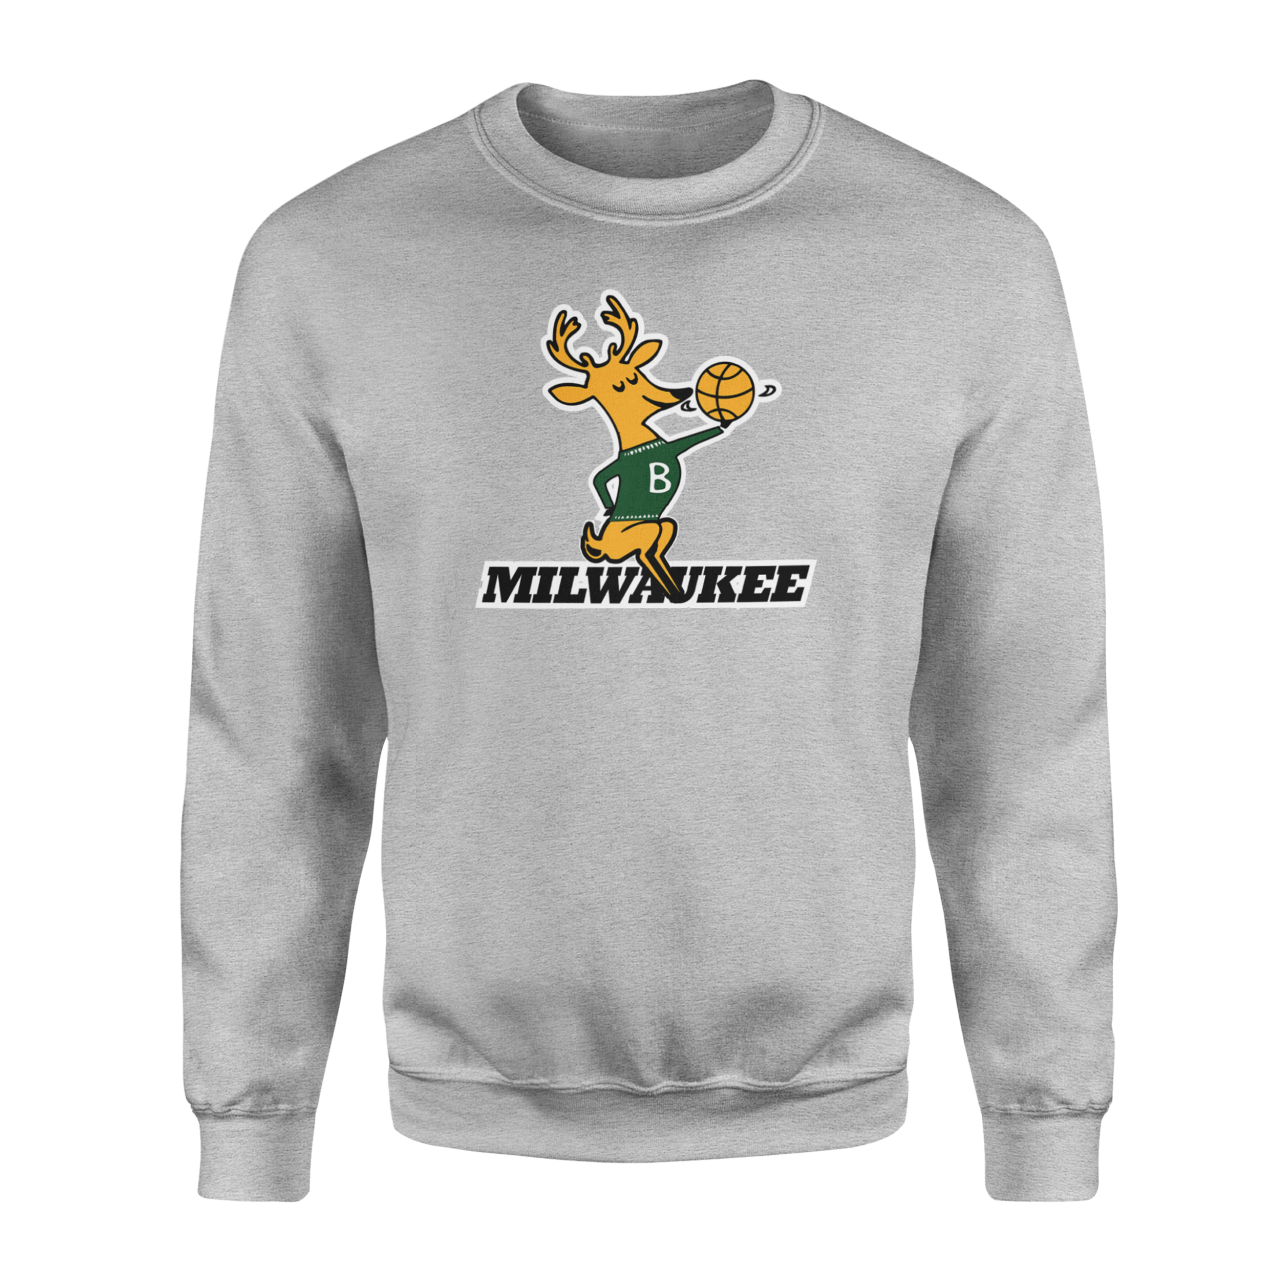 Milwaukee Retro Gri Sweatshirt